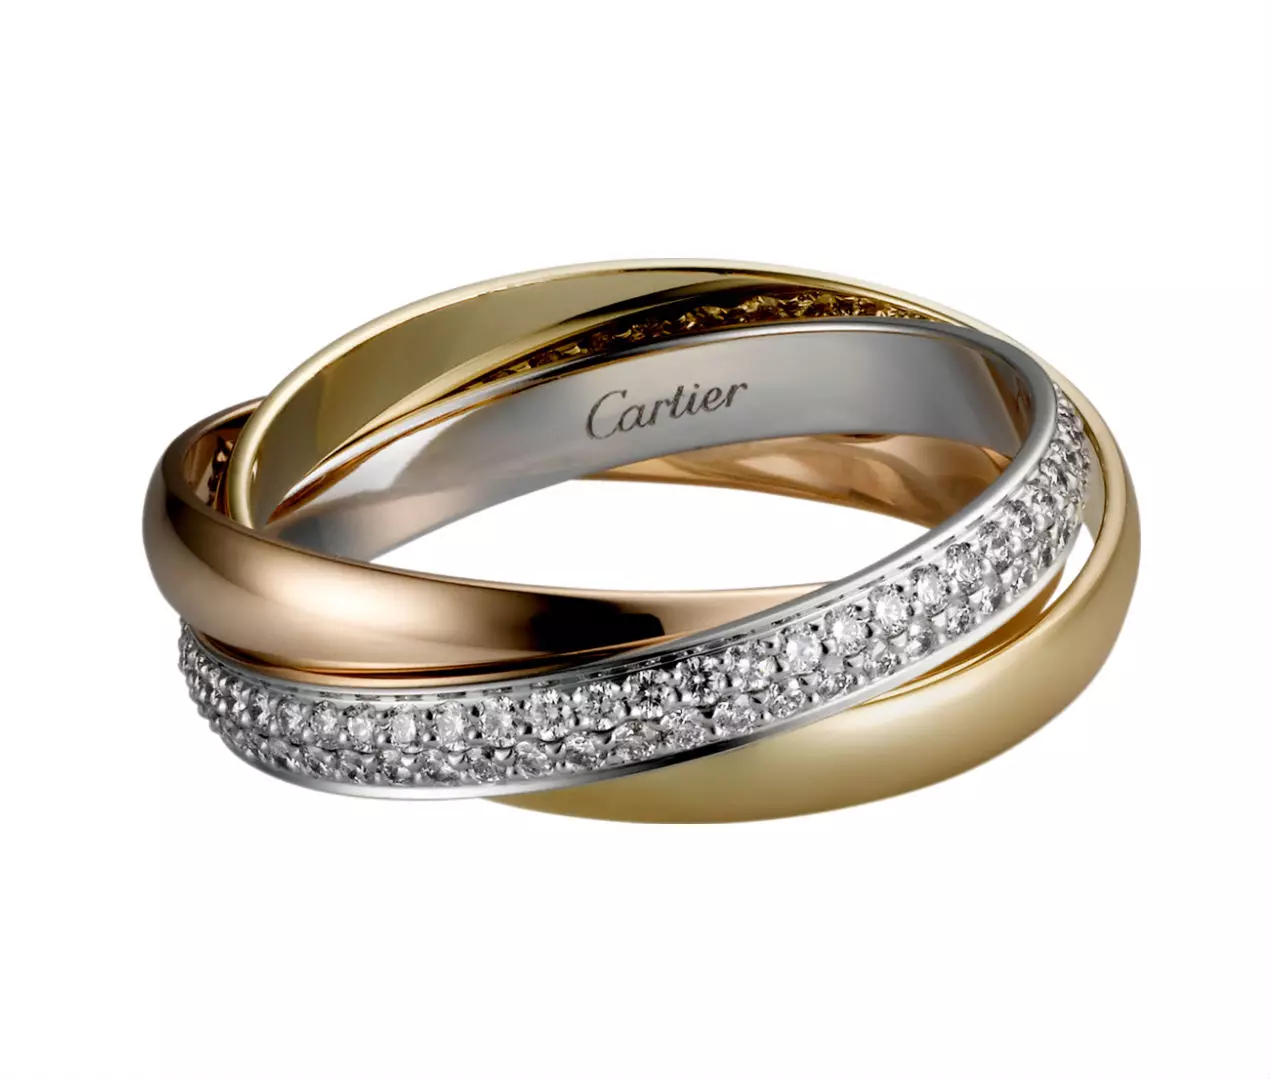 Pierścień Cartier (115 zdjęć): Historia biżuterii i przegląd popularnej trójcy modeli, paznokci, miłość, koszt 3102_56